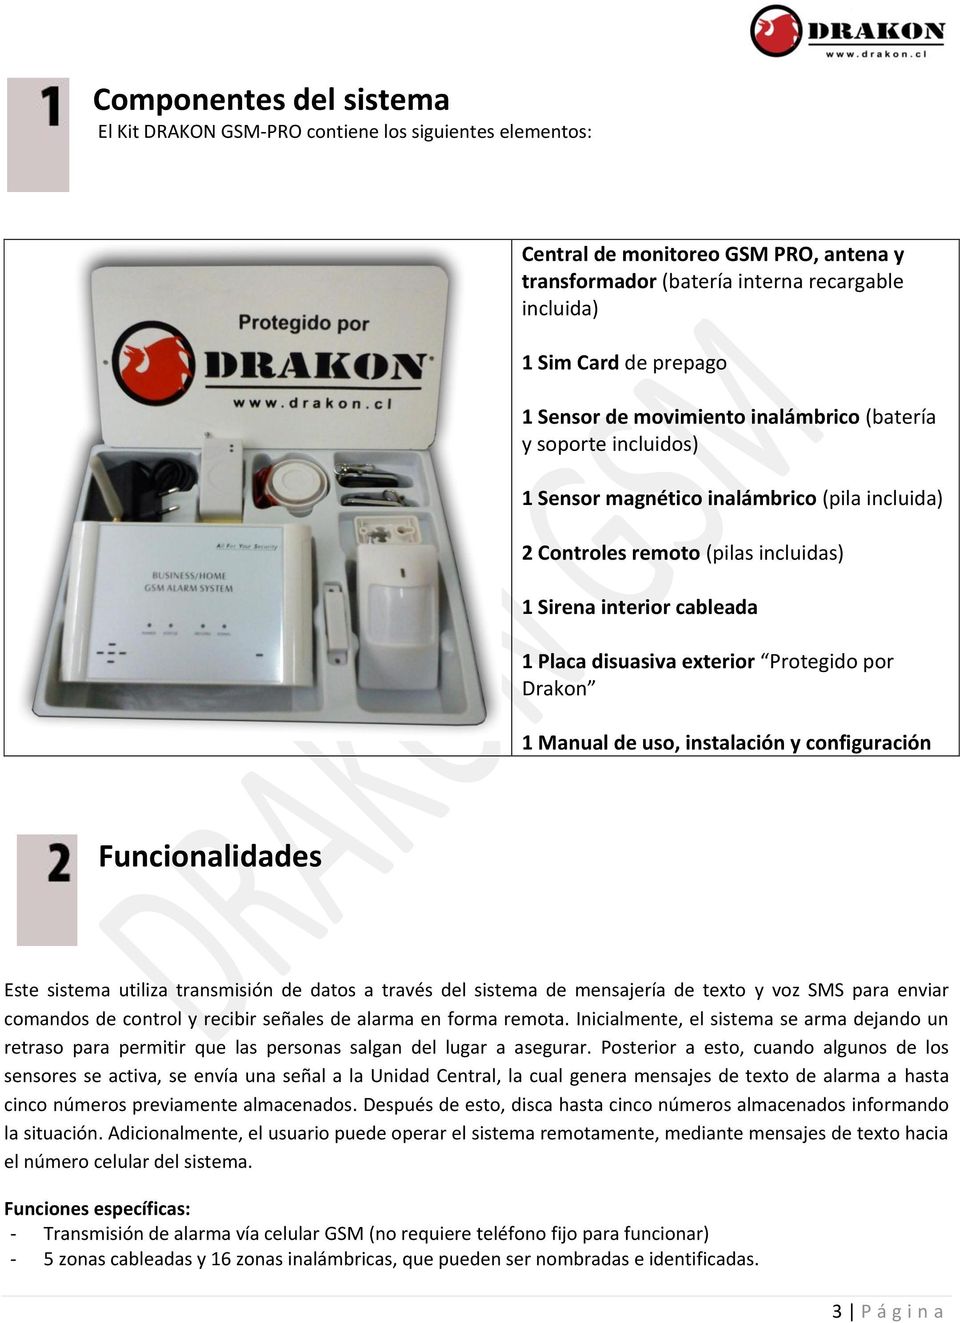 exterior Protegido por Drakon 1 Manual de uso, instalación y configuración Funcionalidades Este sistema utiliza transmisión de datos a través del sistema de mensajería de texto y voz SMS para enviar